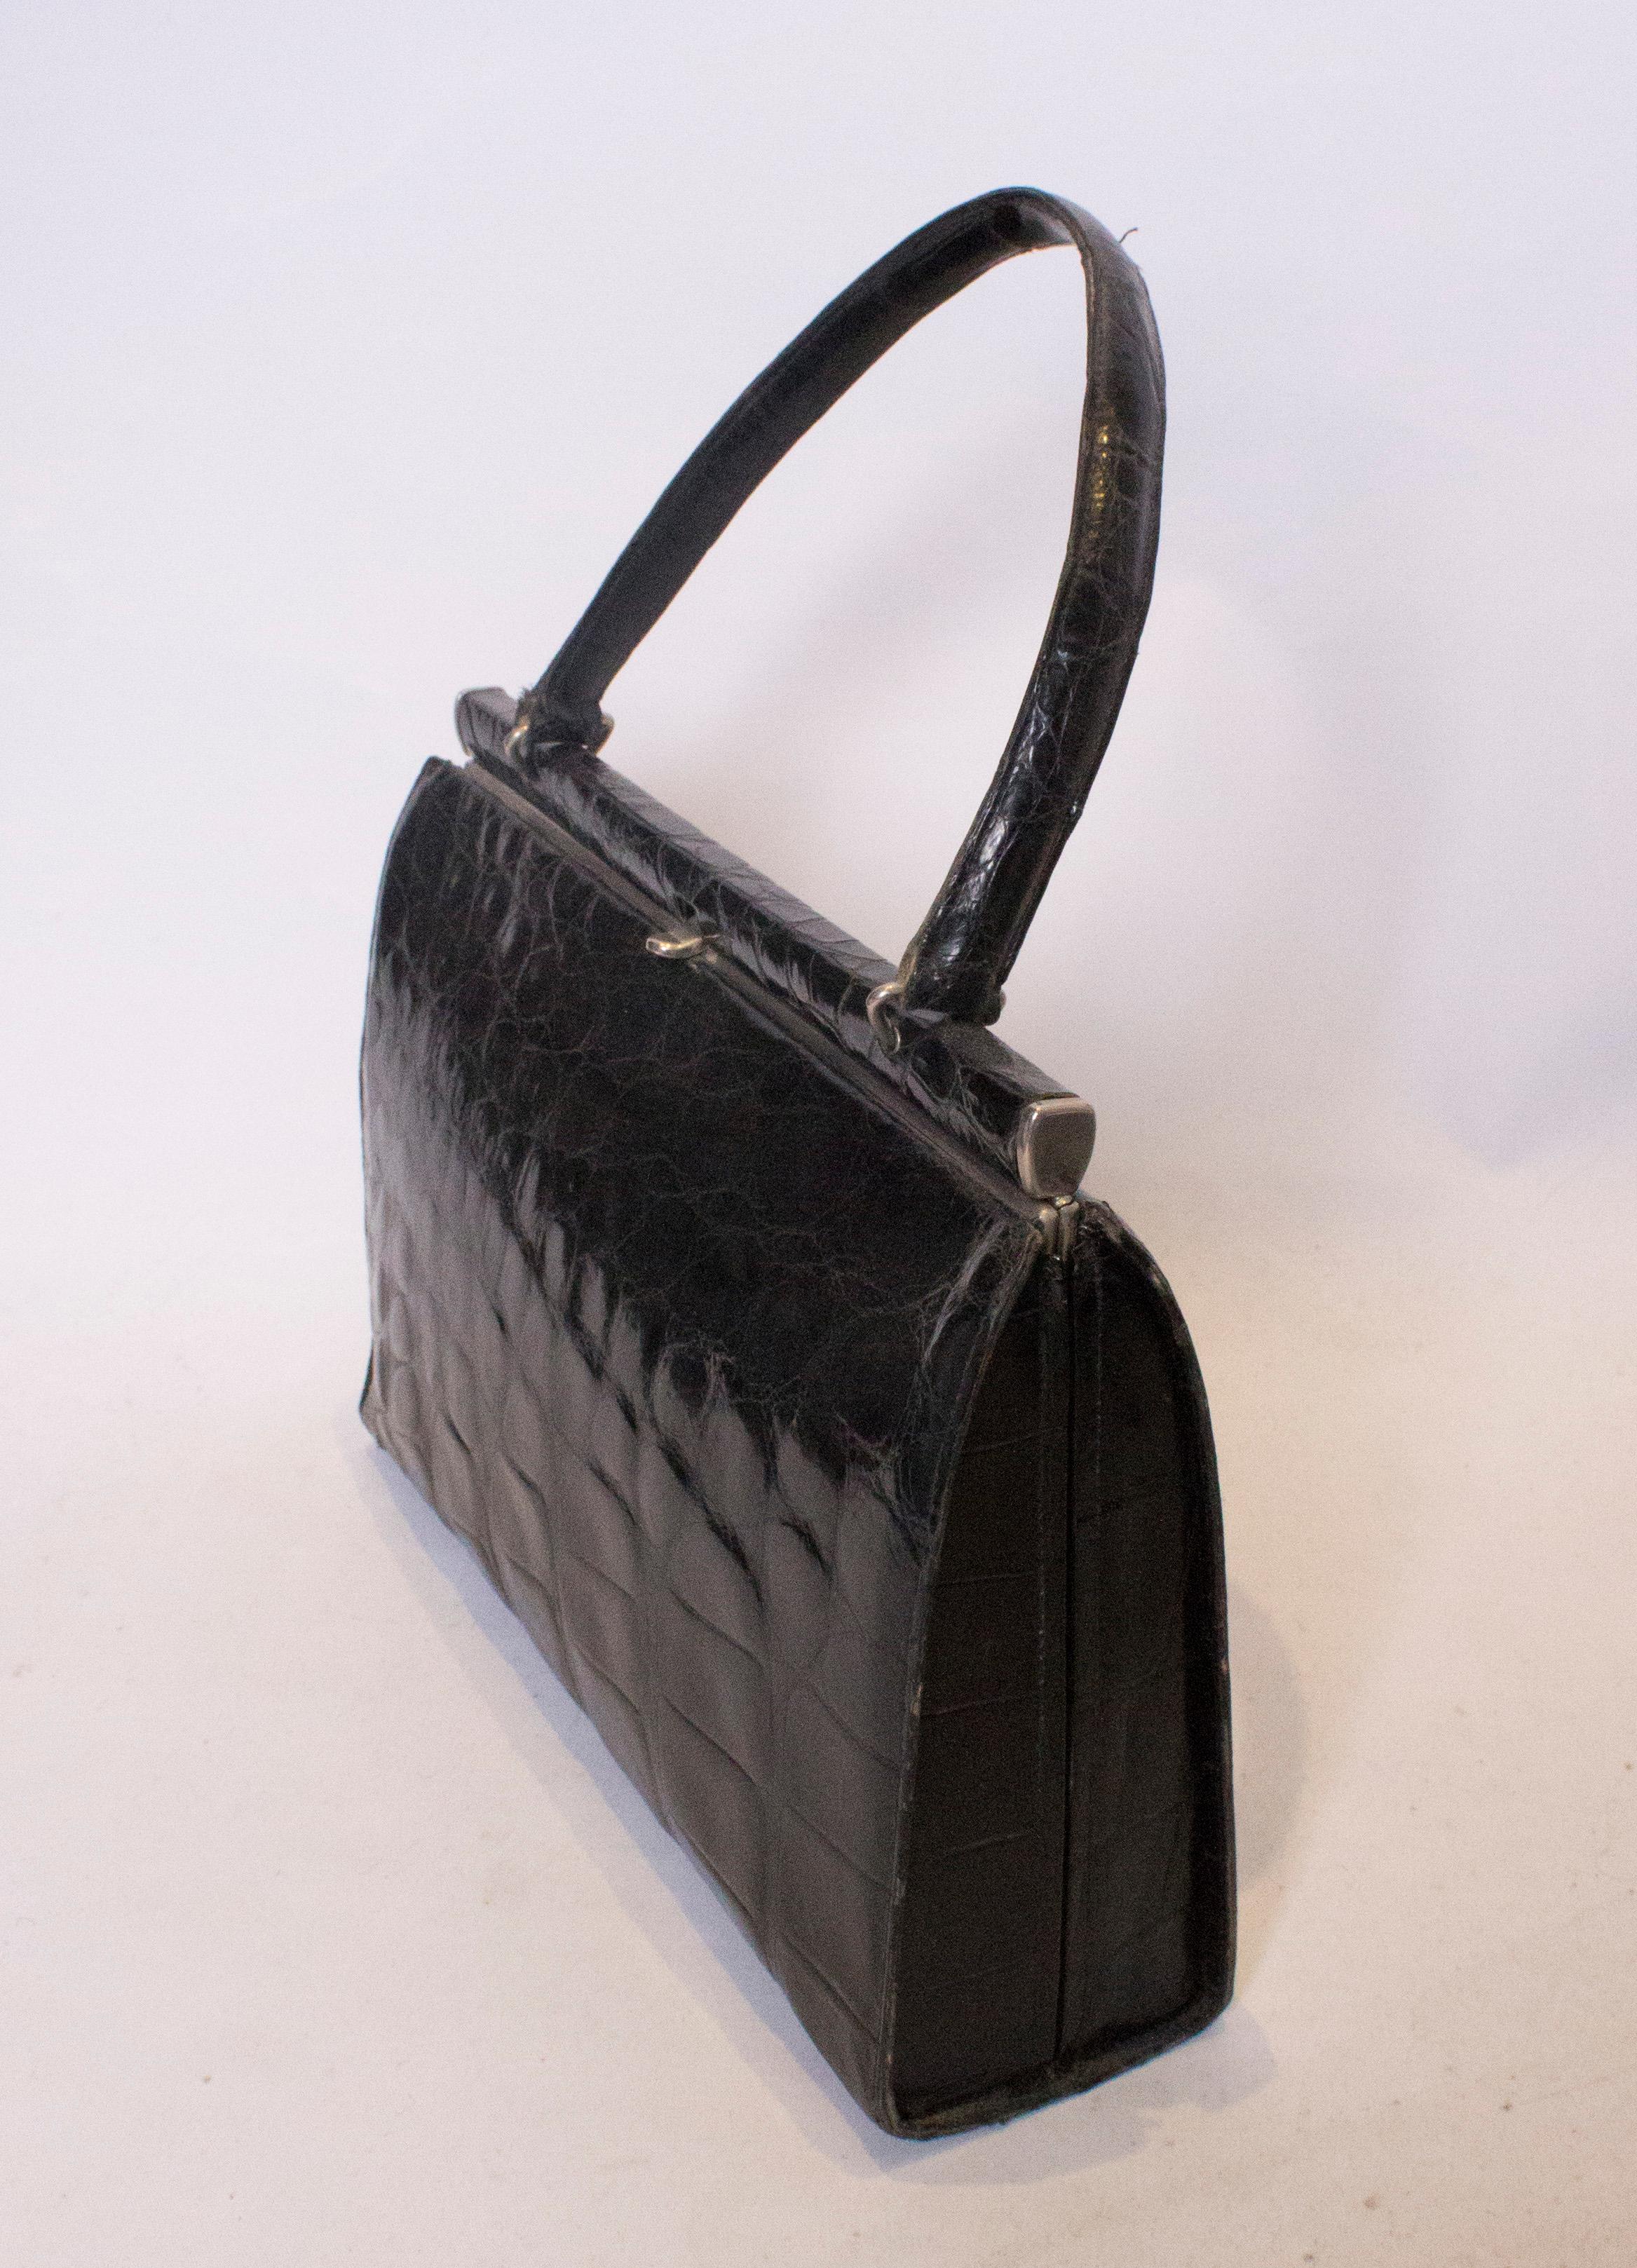 Eine schicke Handtasche aus Krokodil im Vintage-Stil,  Die Tasche hat einen zentralen Verschluss oben und innen gibt es eine Beuteltasche und eine Reißverschlusstasche.
Maße: Breite 12'', Höhe 8 1/2'', Tiefe 3 1/4''.